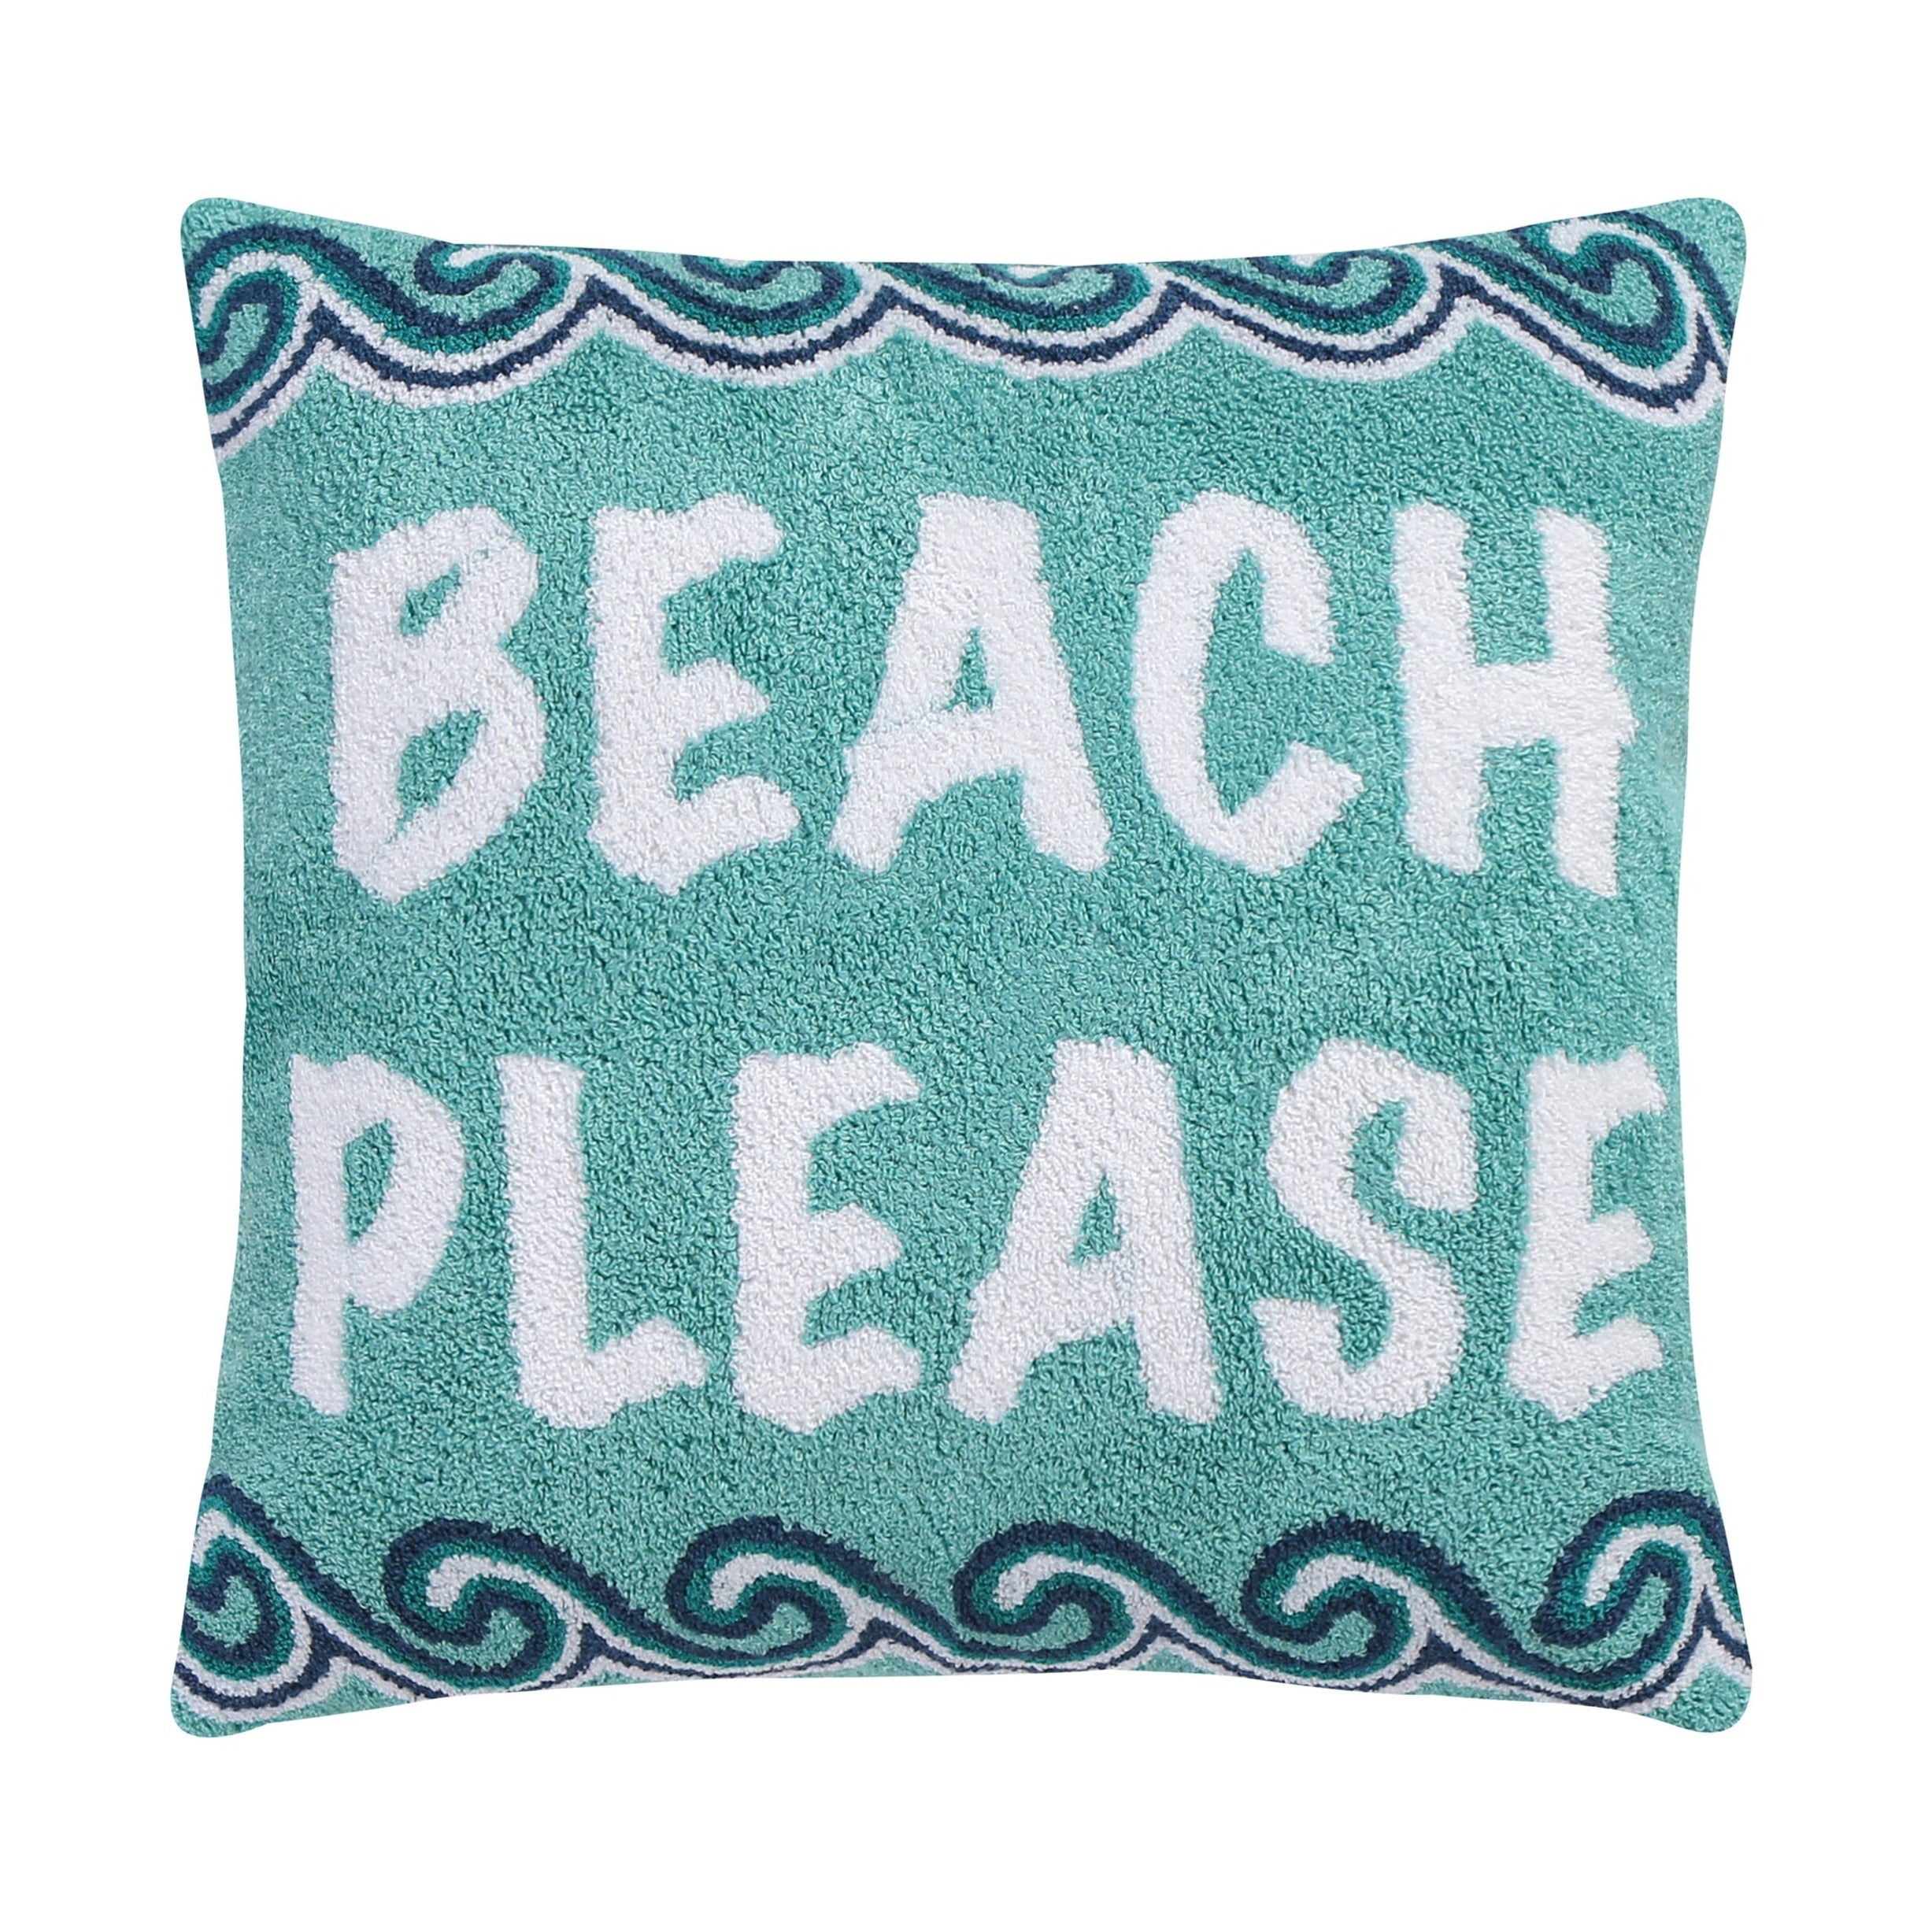 Beach Days Beach Please Pillow